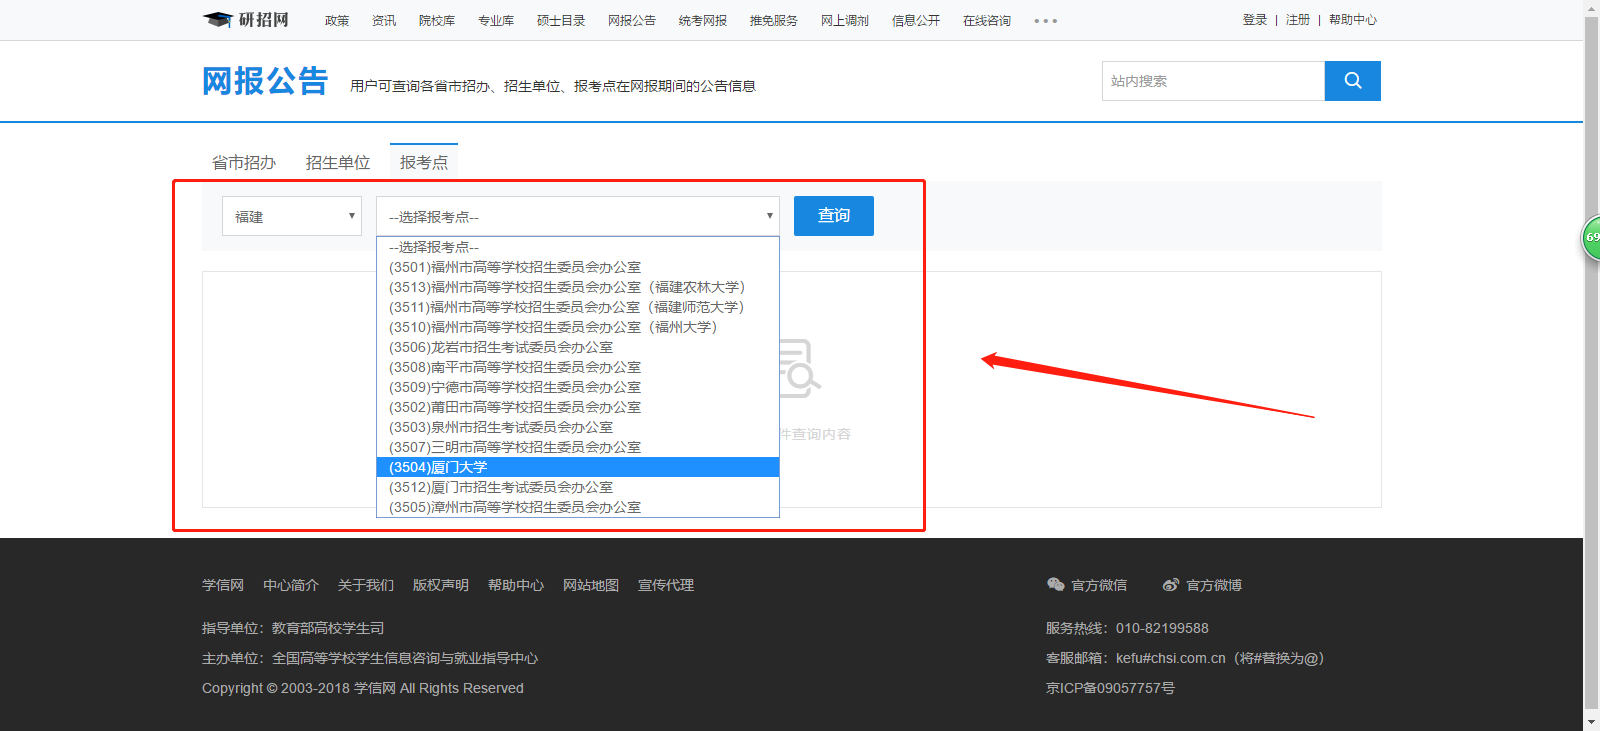 中国研究生招生信息网（即研招网）报考点信息筛选页面